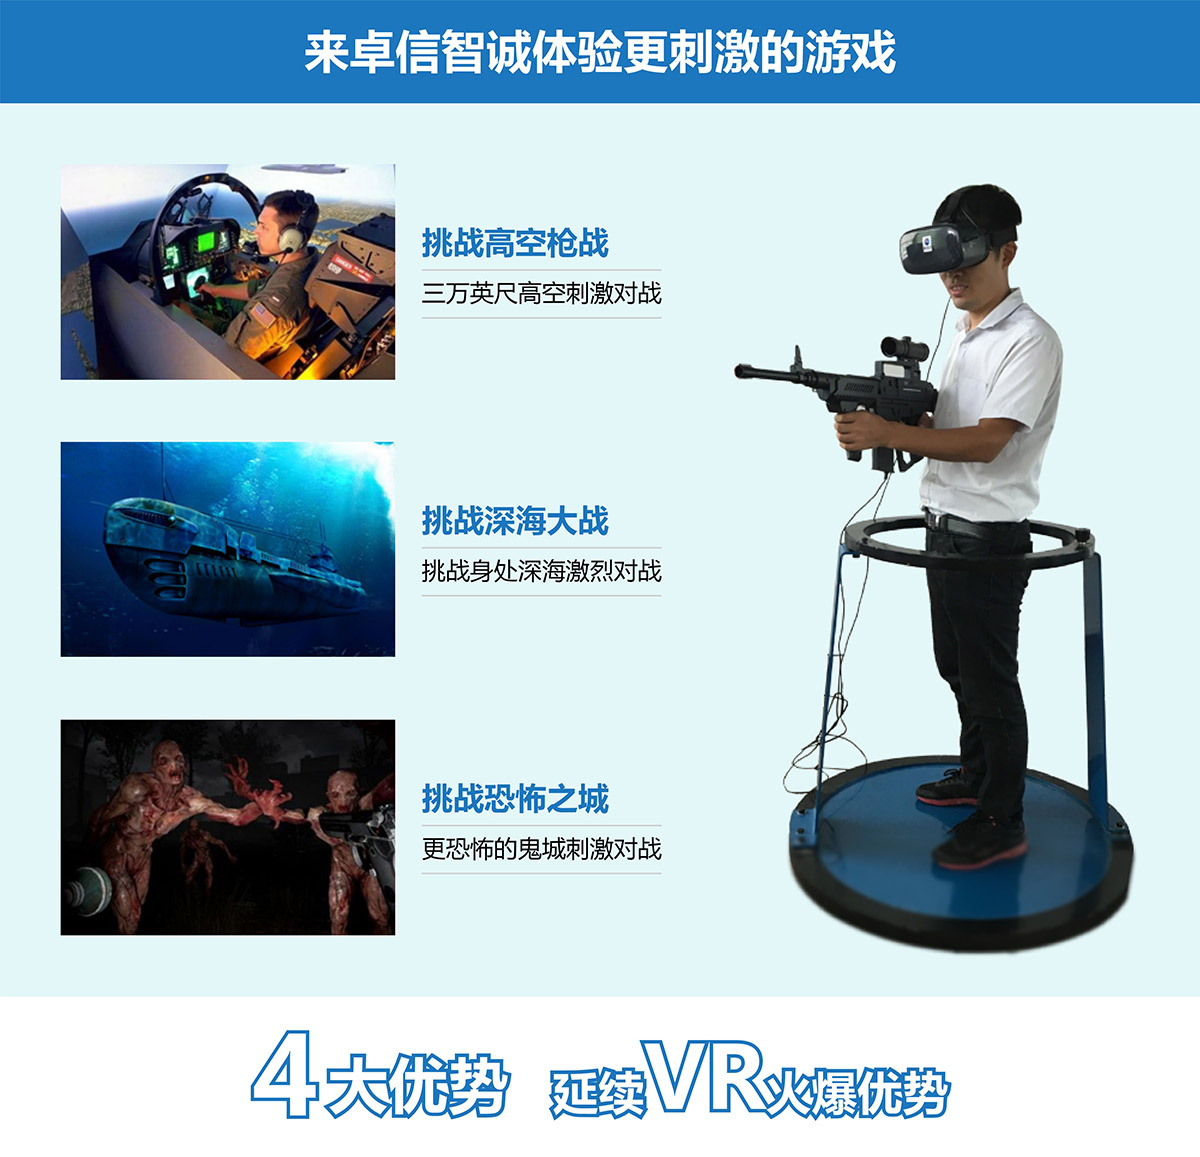 动感影院VR对战4大优势延续vr火爆优势.jpg